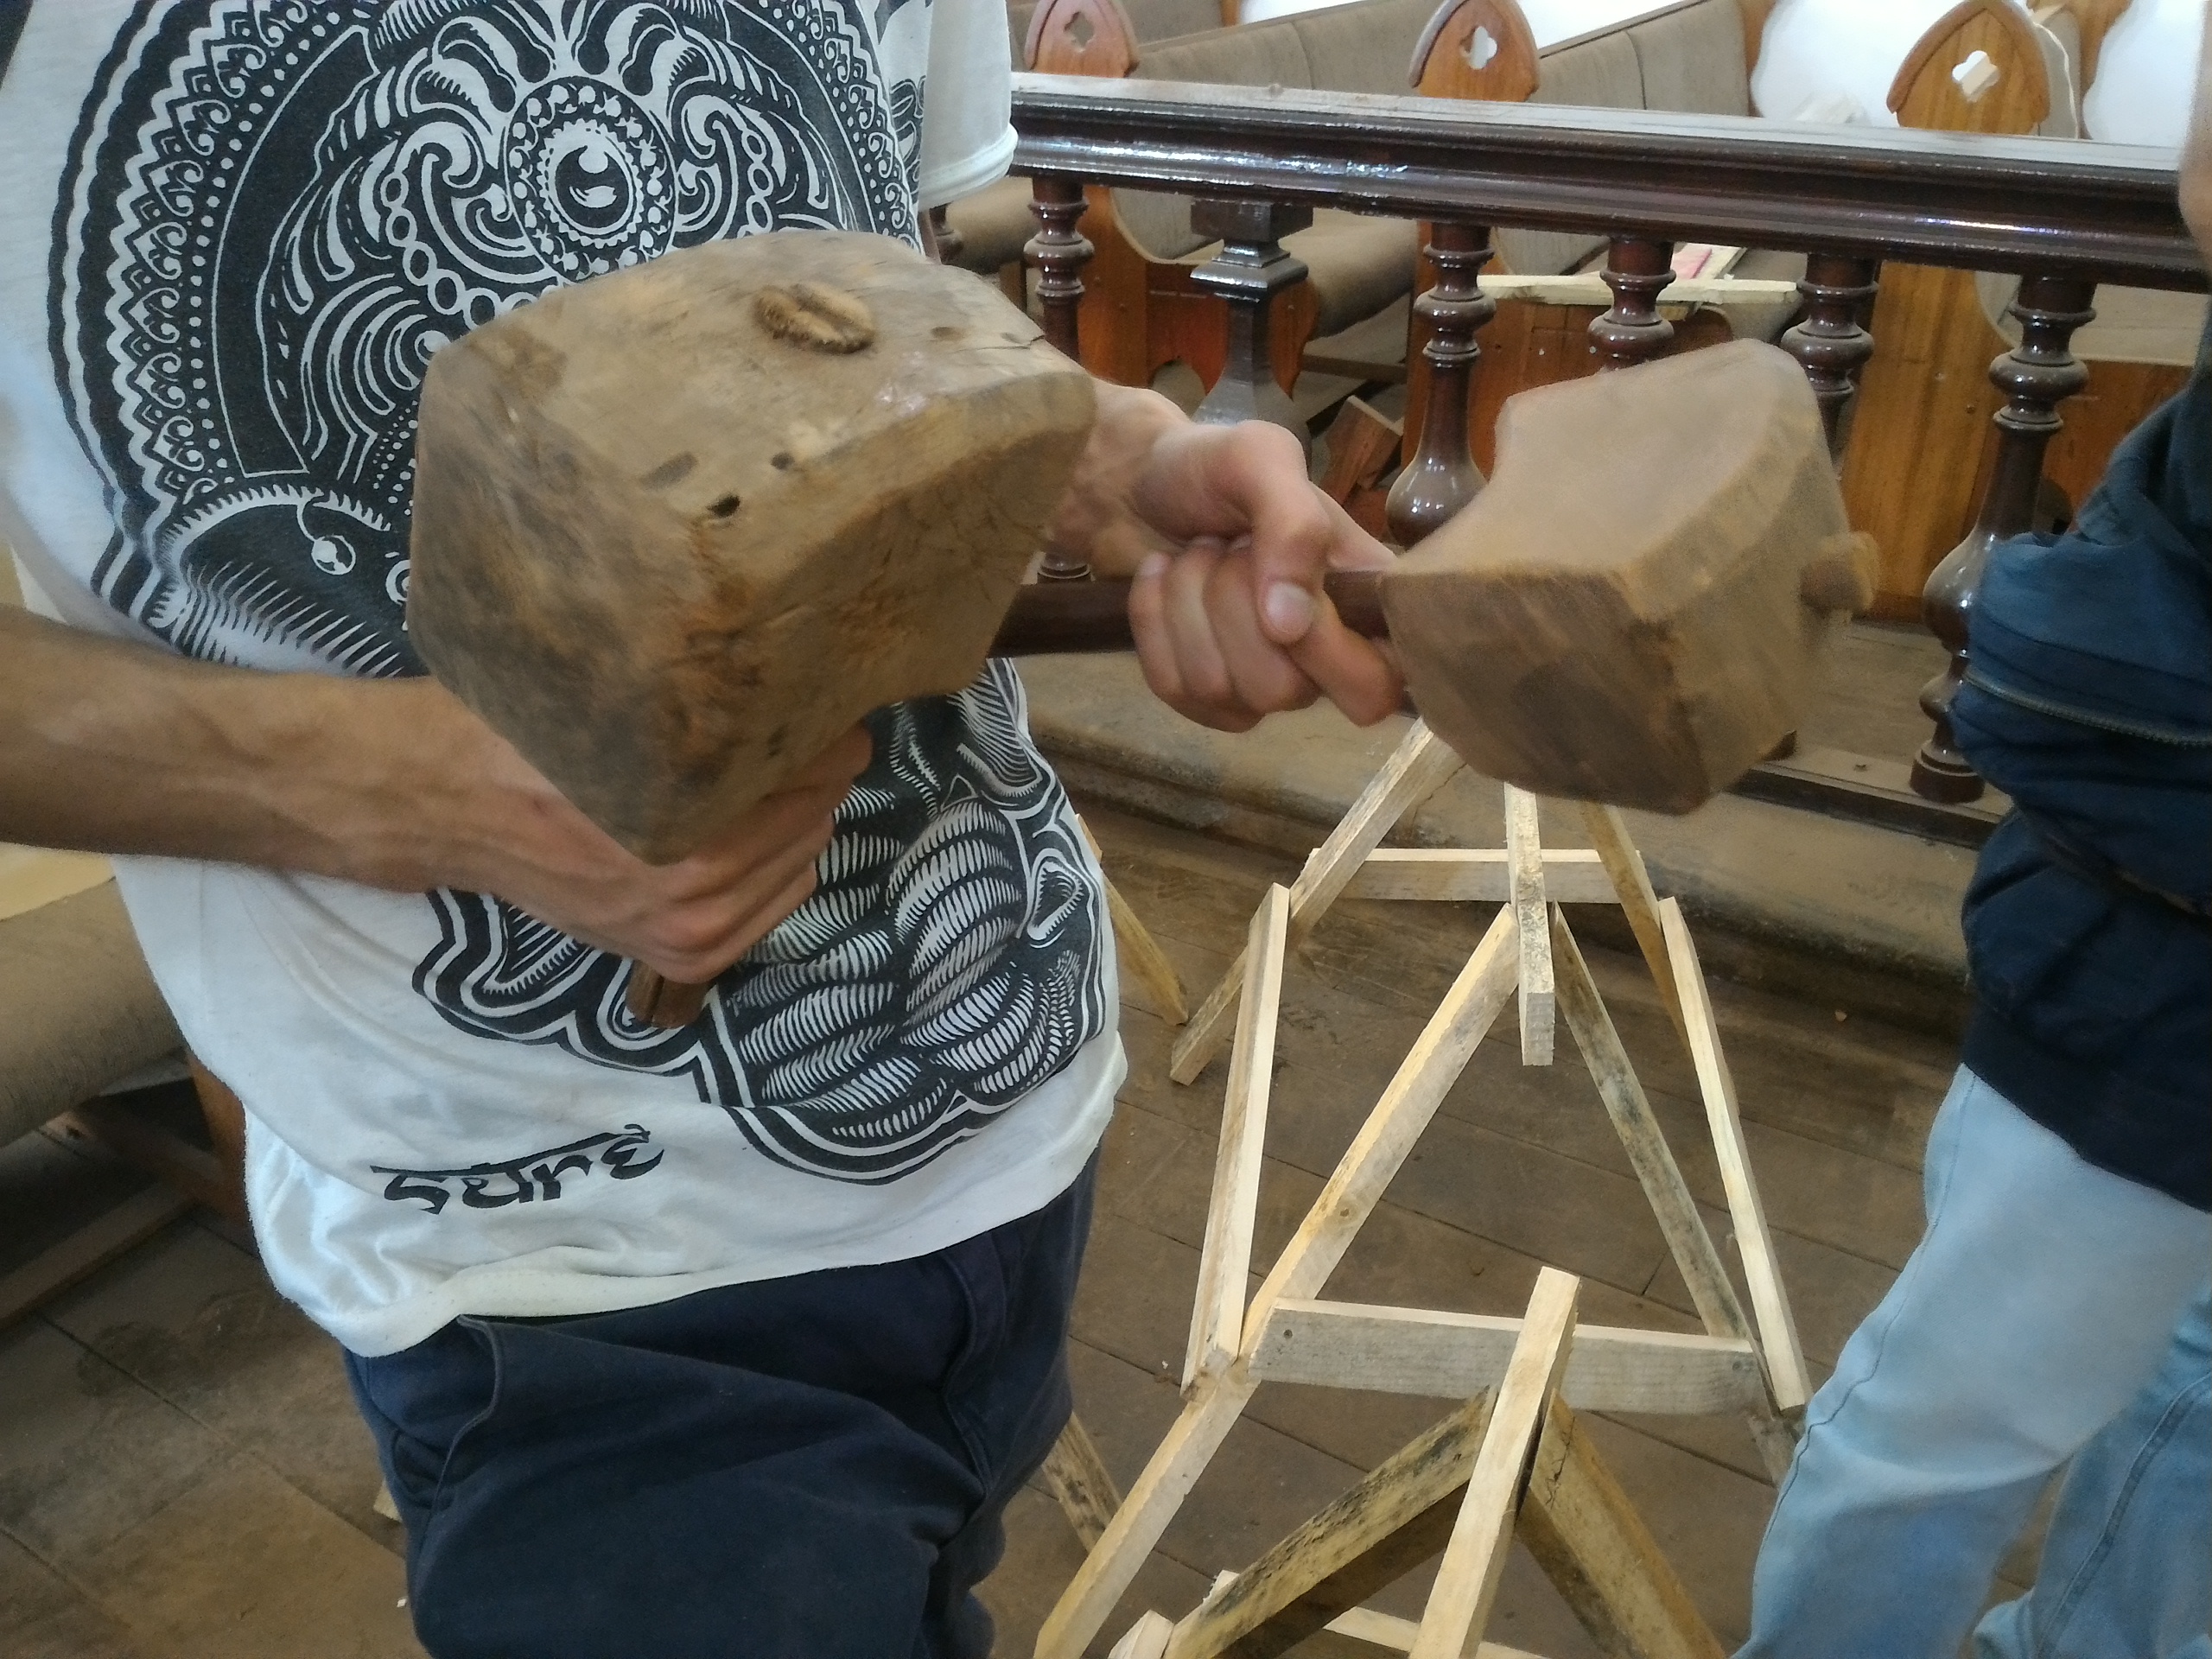 Martelos de madeira do Século 18 descobertos na Matriz de Nossa Senhora da Conceição, em Congonhas (MG), durante as obras de restauração do PAC Cidades Históricas